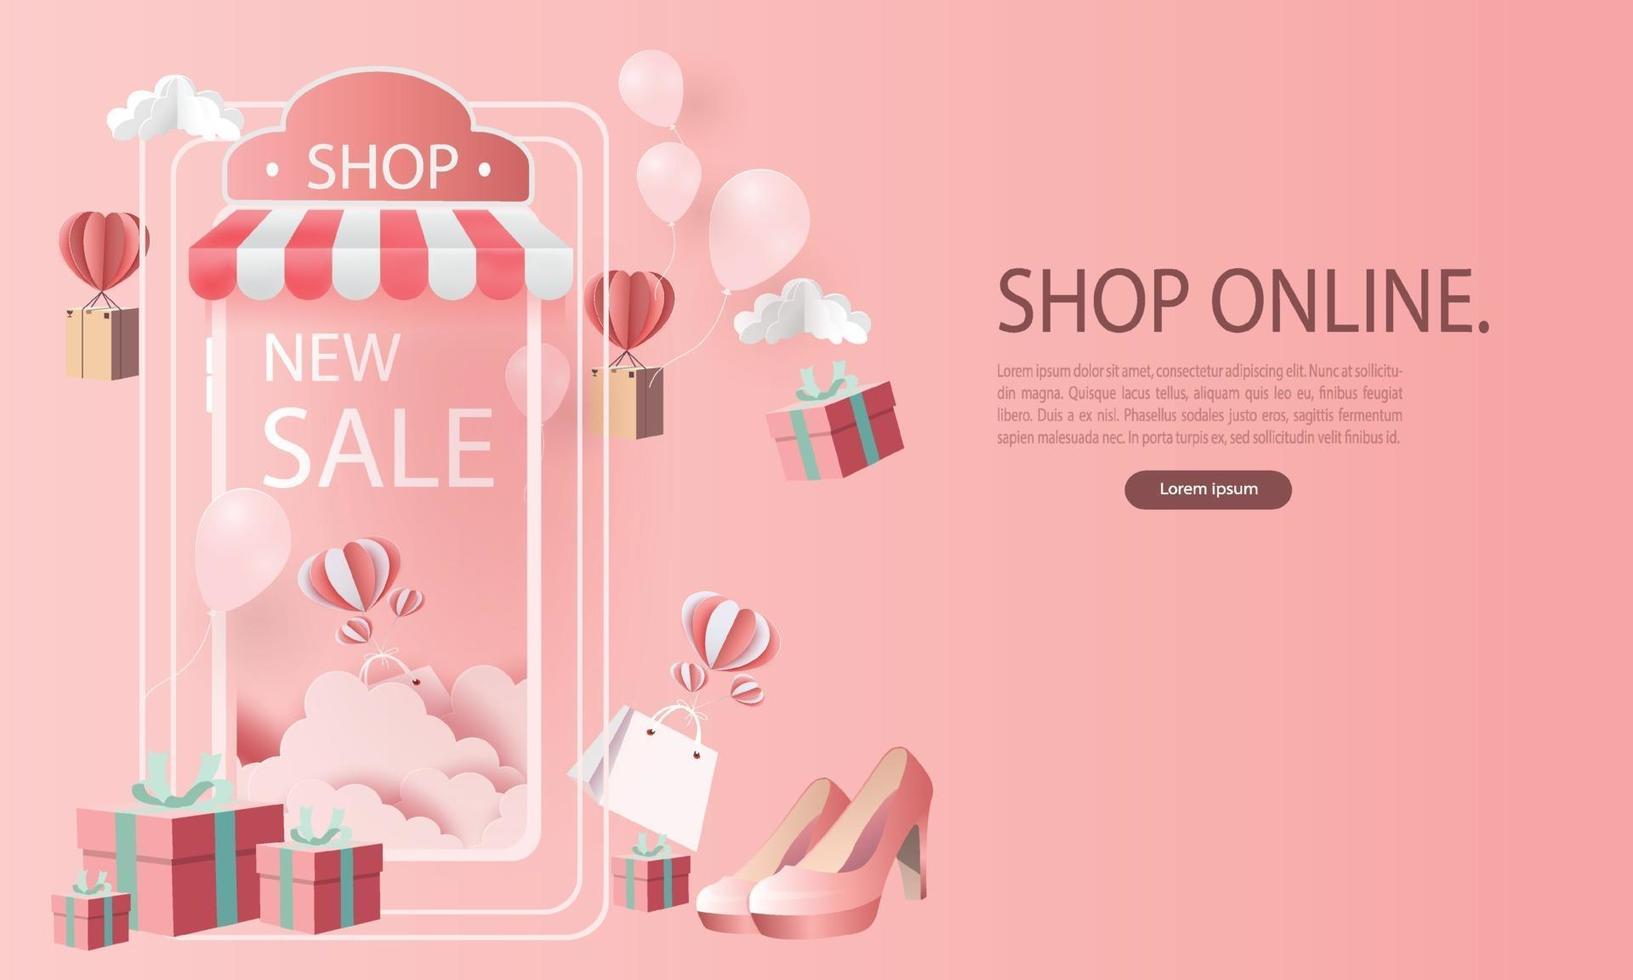 papier art shopping en ligne sur smartphone et nouveau fond rose de promotion de vente d'achat pour le concept de femmes de commerce électronique du marché des bannières. vecteur